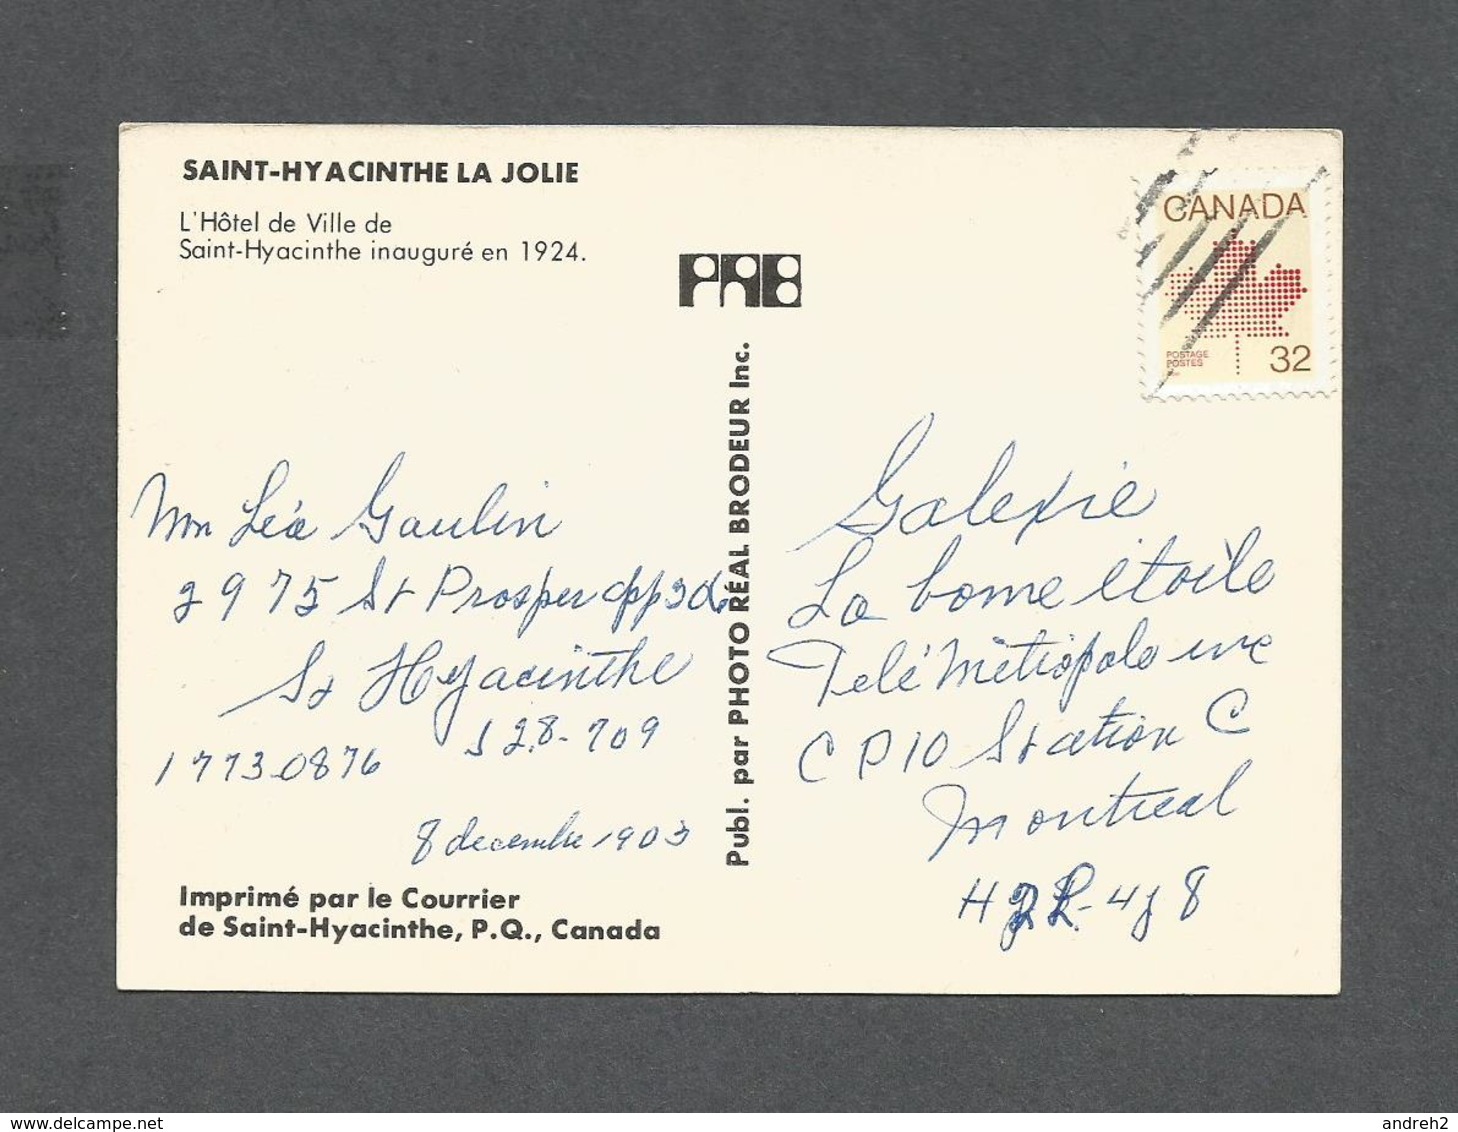 ST HYACINTHE - QUÉBEC - HÔTEL DE VILLE INAUGURÉ EN 1924 - PHOTO RÉAL BRODEUR - St. Hyacinthe